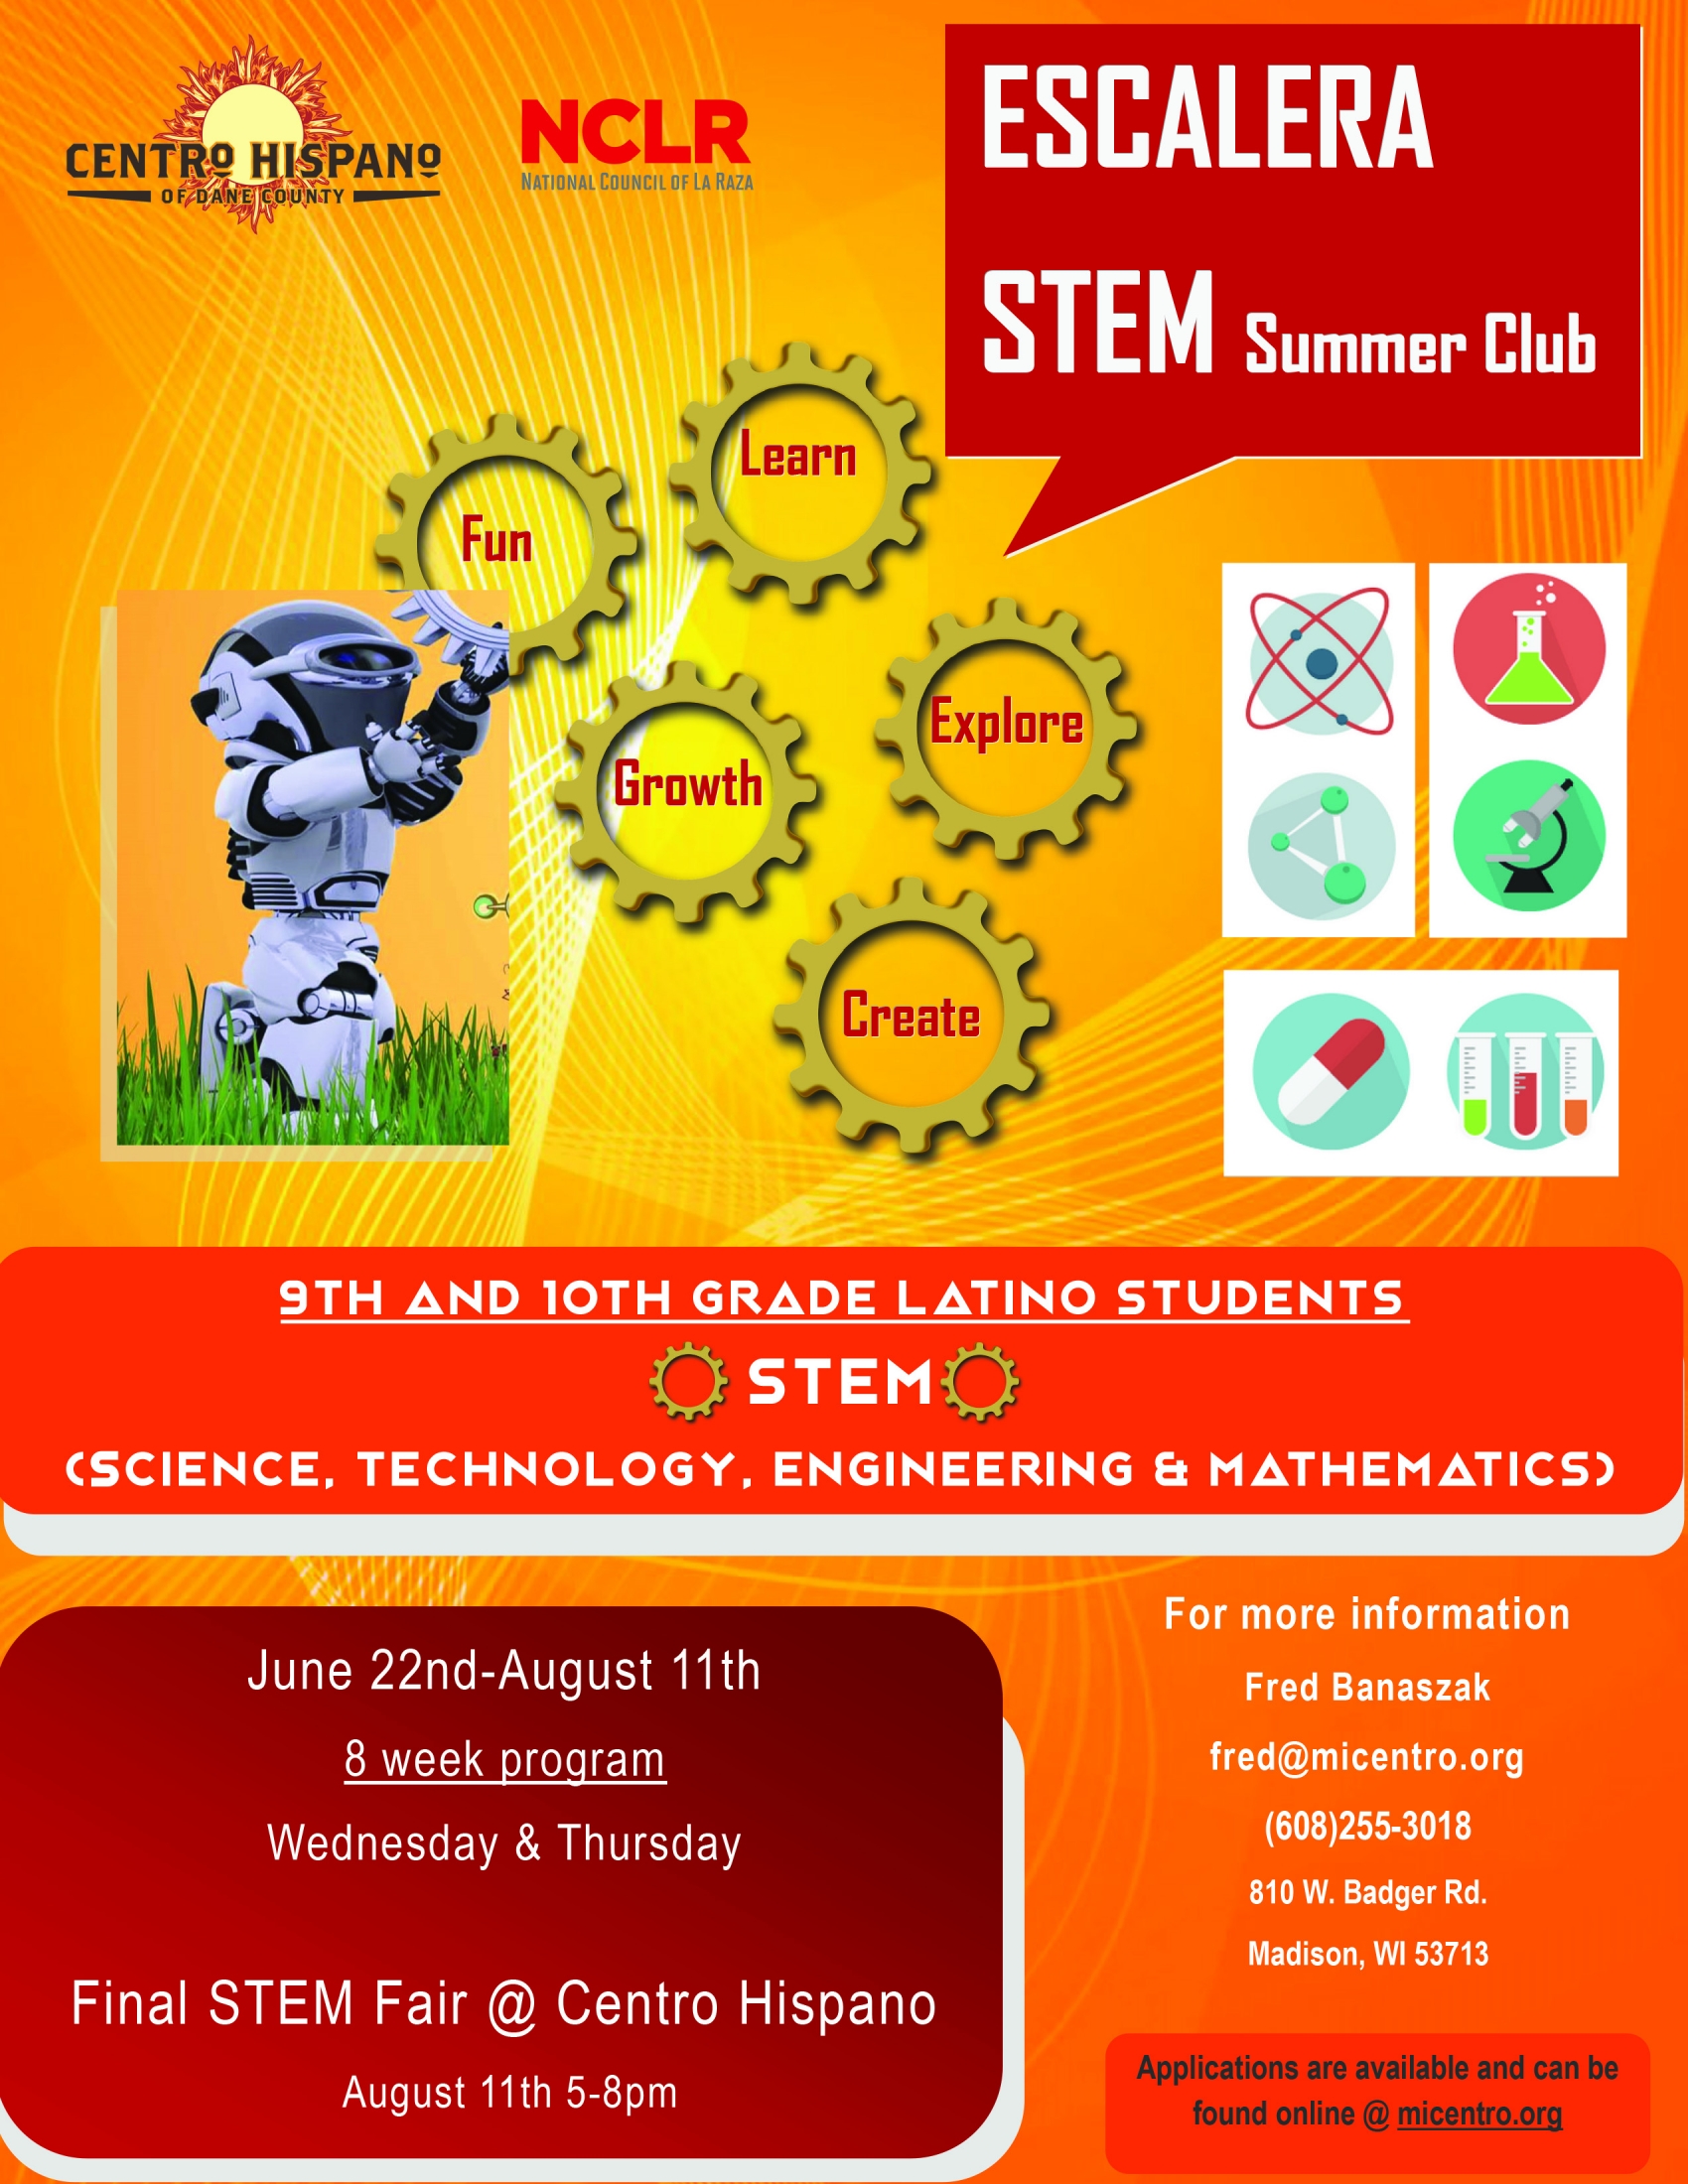 flier for Escalera STEM summer club